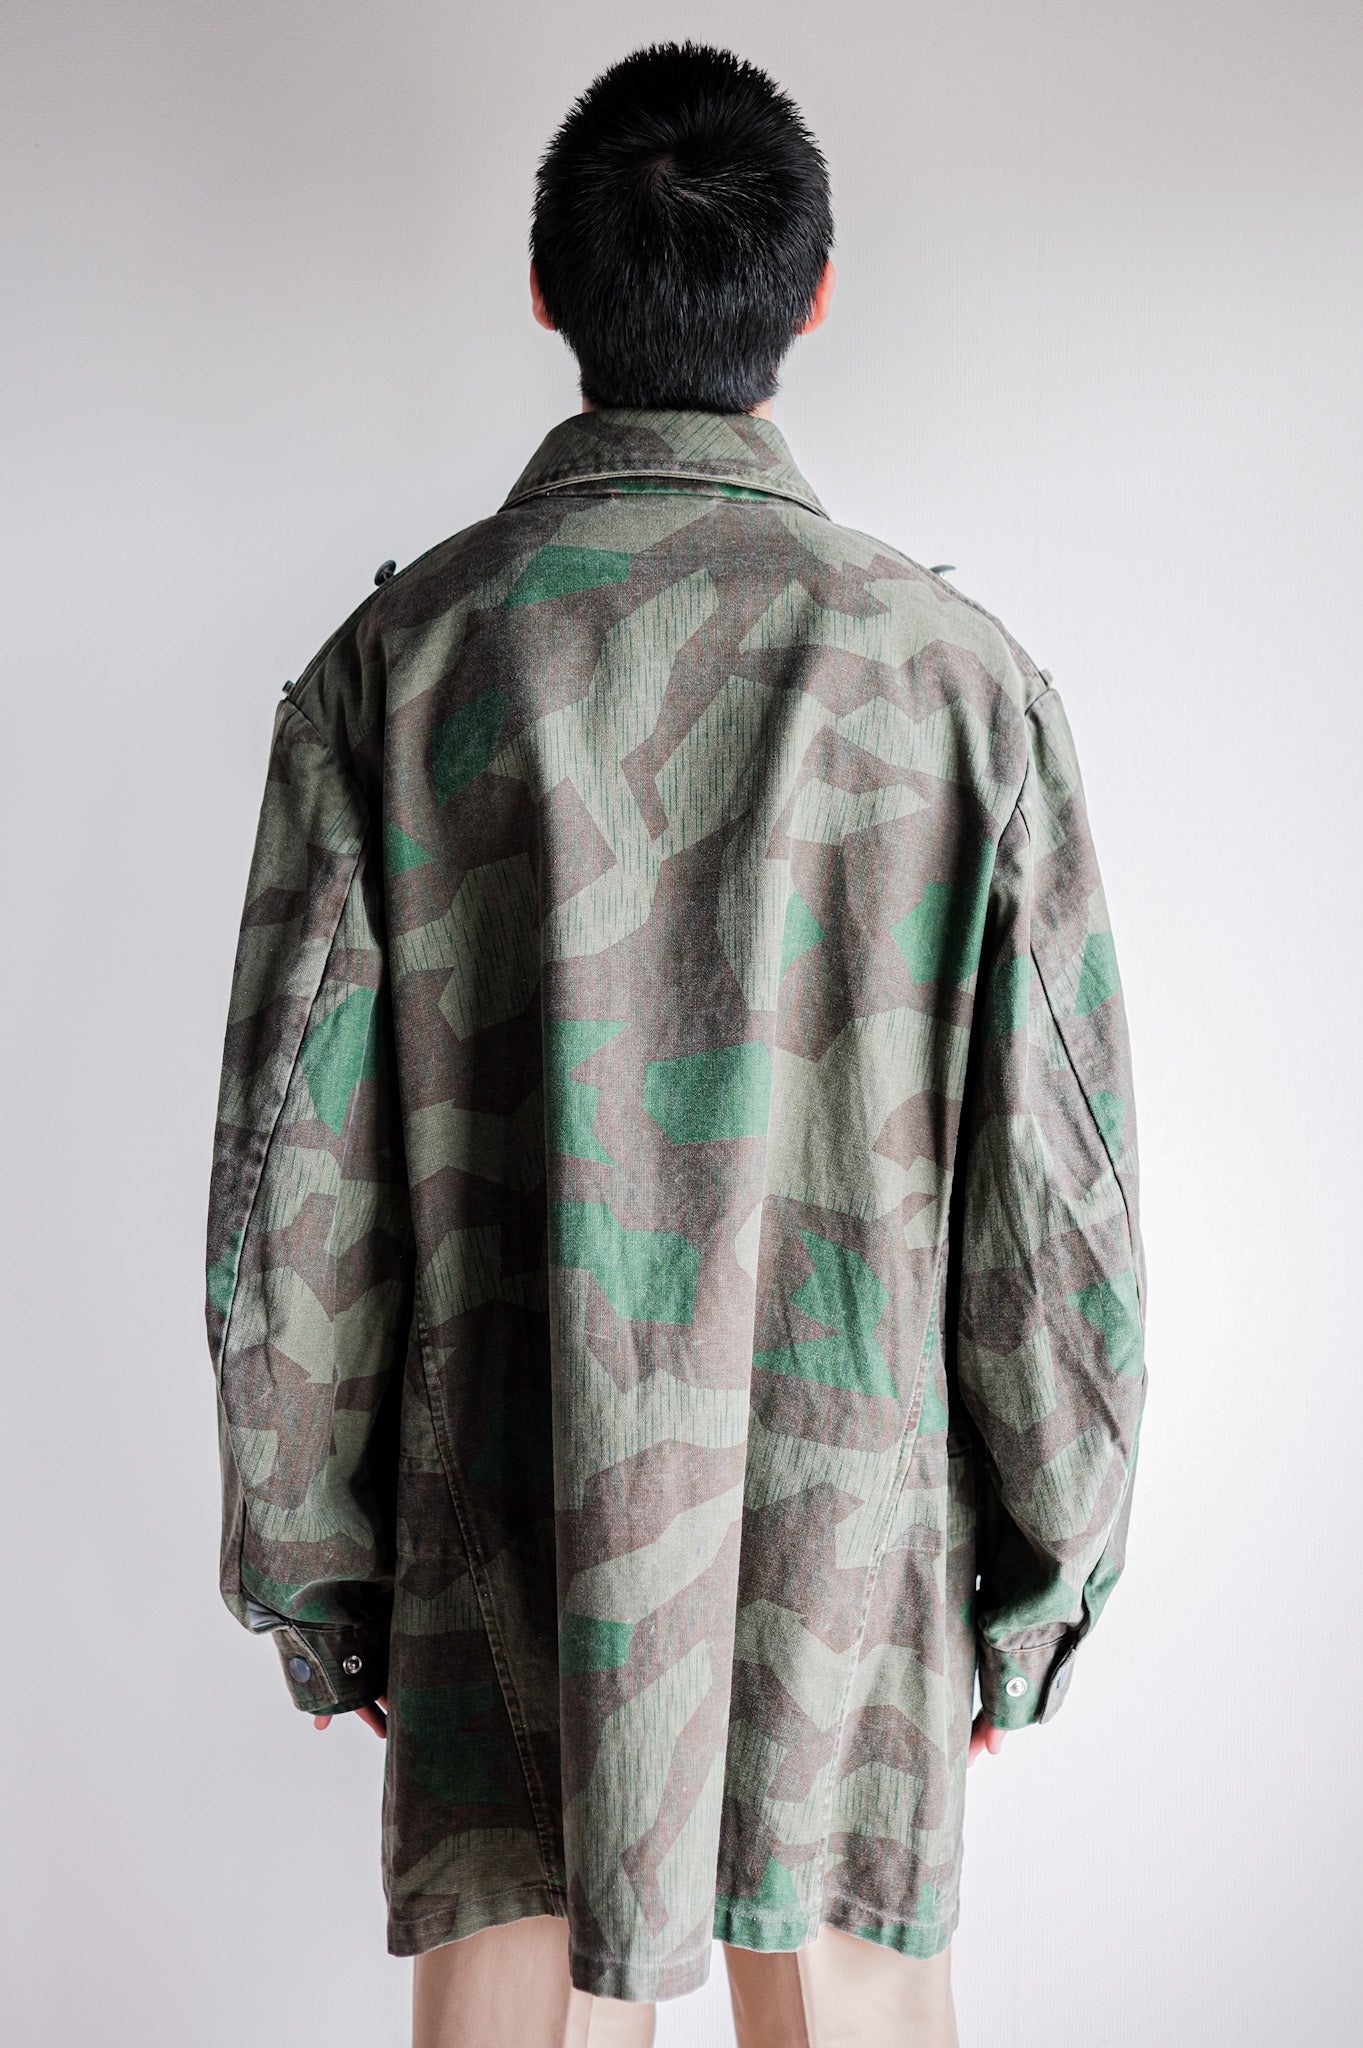 [〜70年代]德國軍隊分裂式偽裝繖形夾克“繁殖”